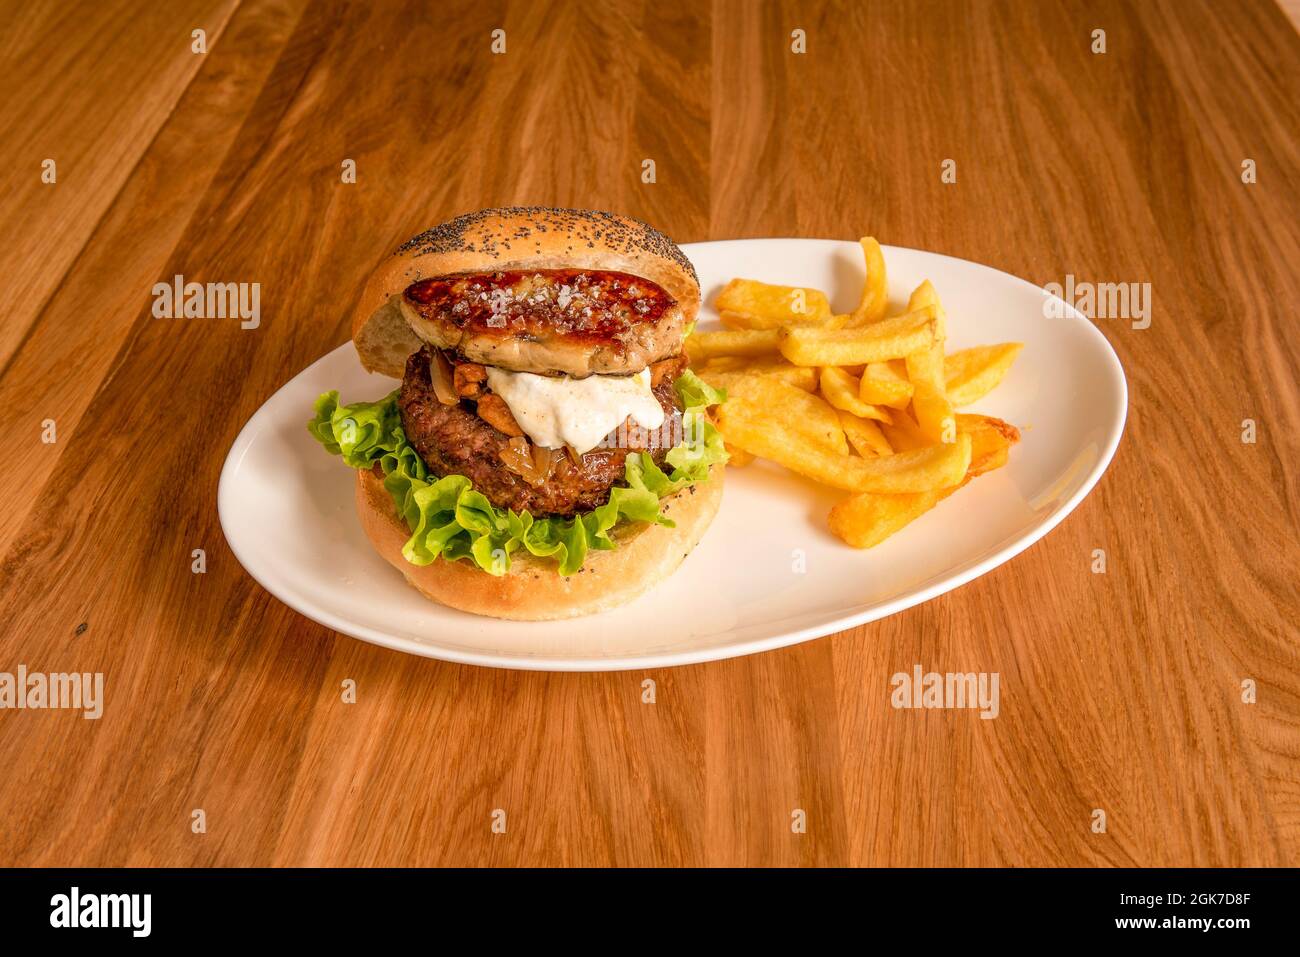 Rindfleisch-Burger mit einem Stück Gänseleberpastete am Rand, Salat, Sauce, karamellisierter Zwiebel und Beilage-Pommes Stockfoto